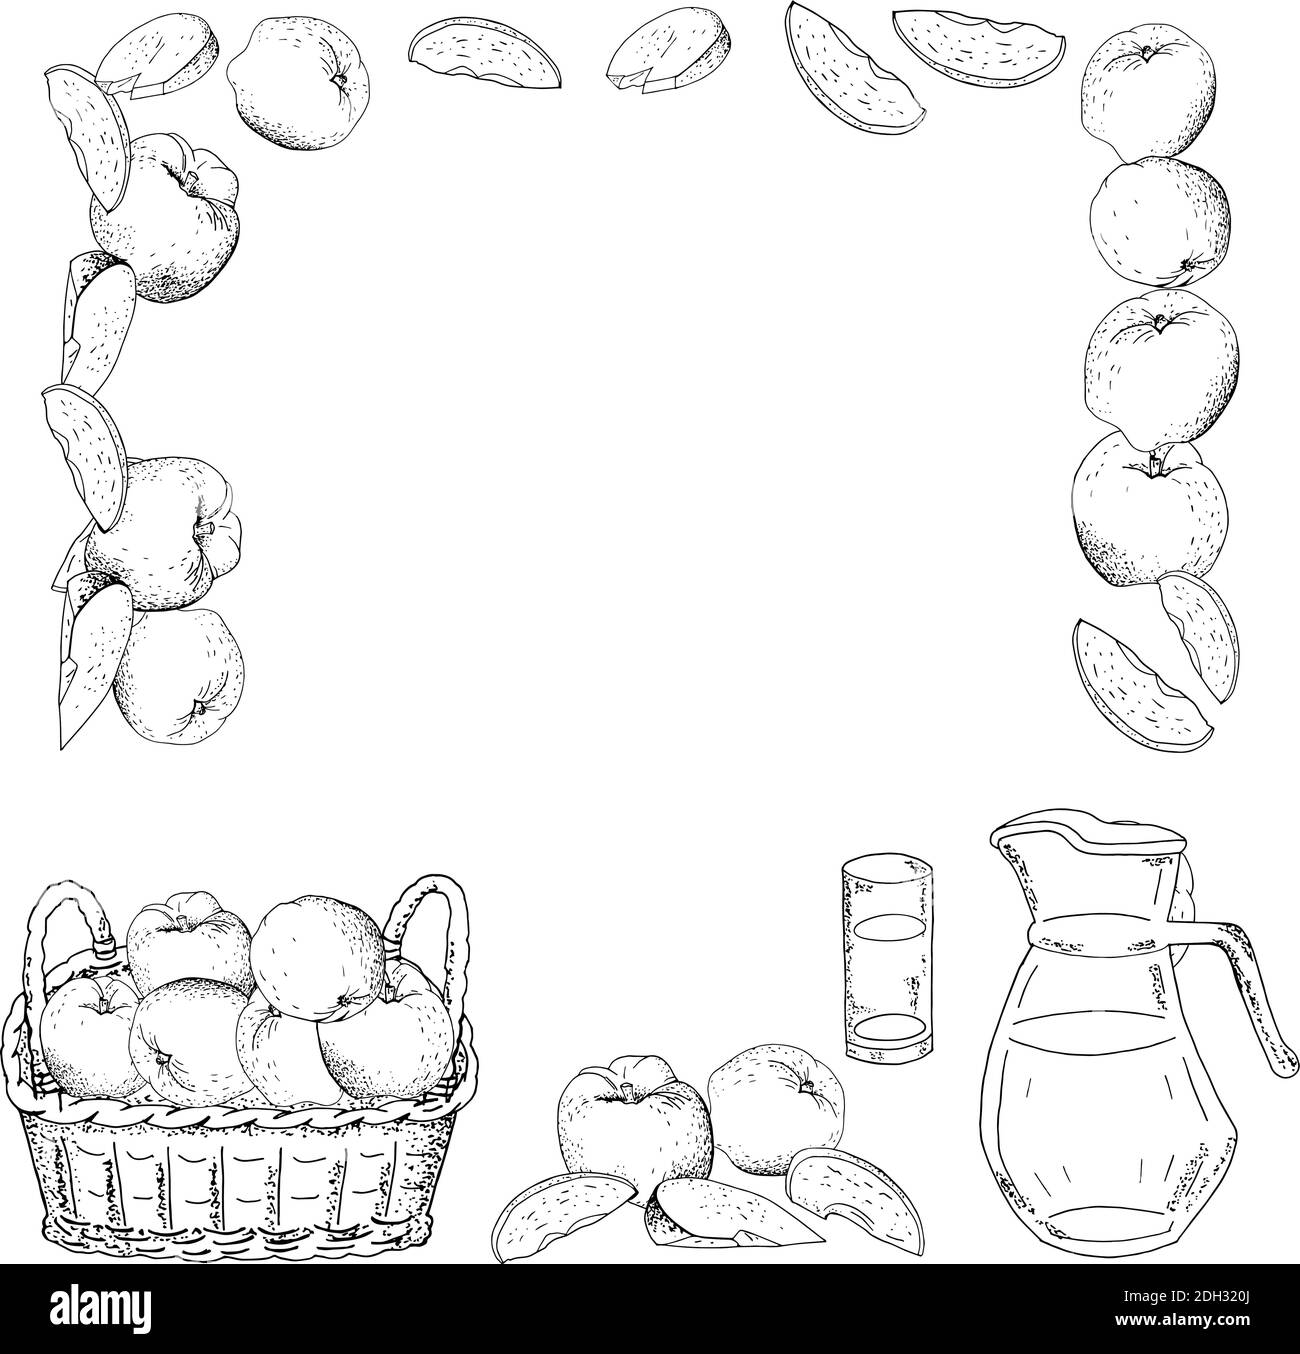 Quadratische Schablone mit Äpfeln, Apfelscheiben. Handgezeichnete Abbildung von Lebensmitteln. Stock Vektor